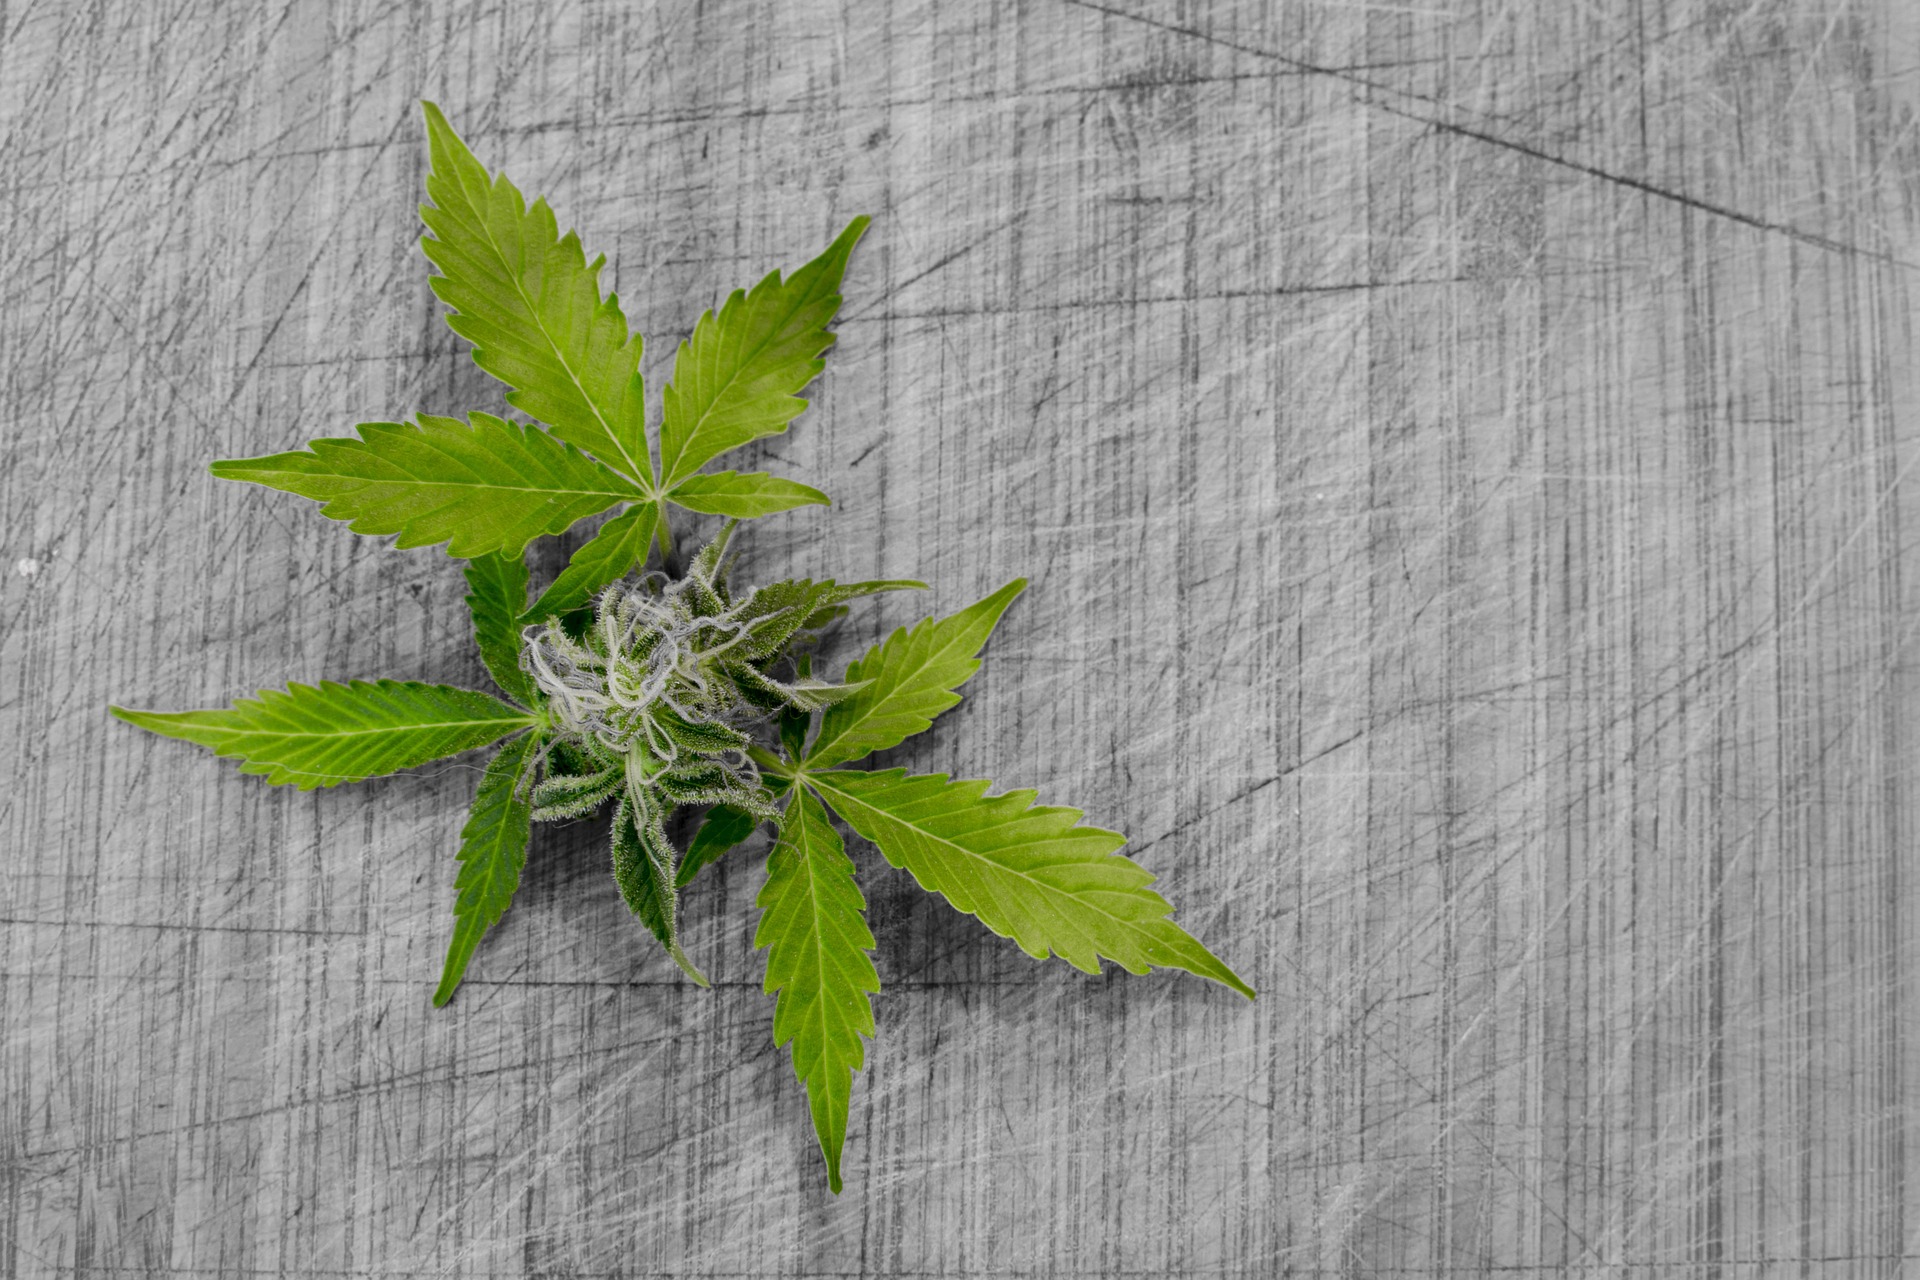 Kolekcjonerskie nasiona marihuany – co warto o nich wiedzieć?